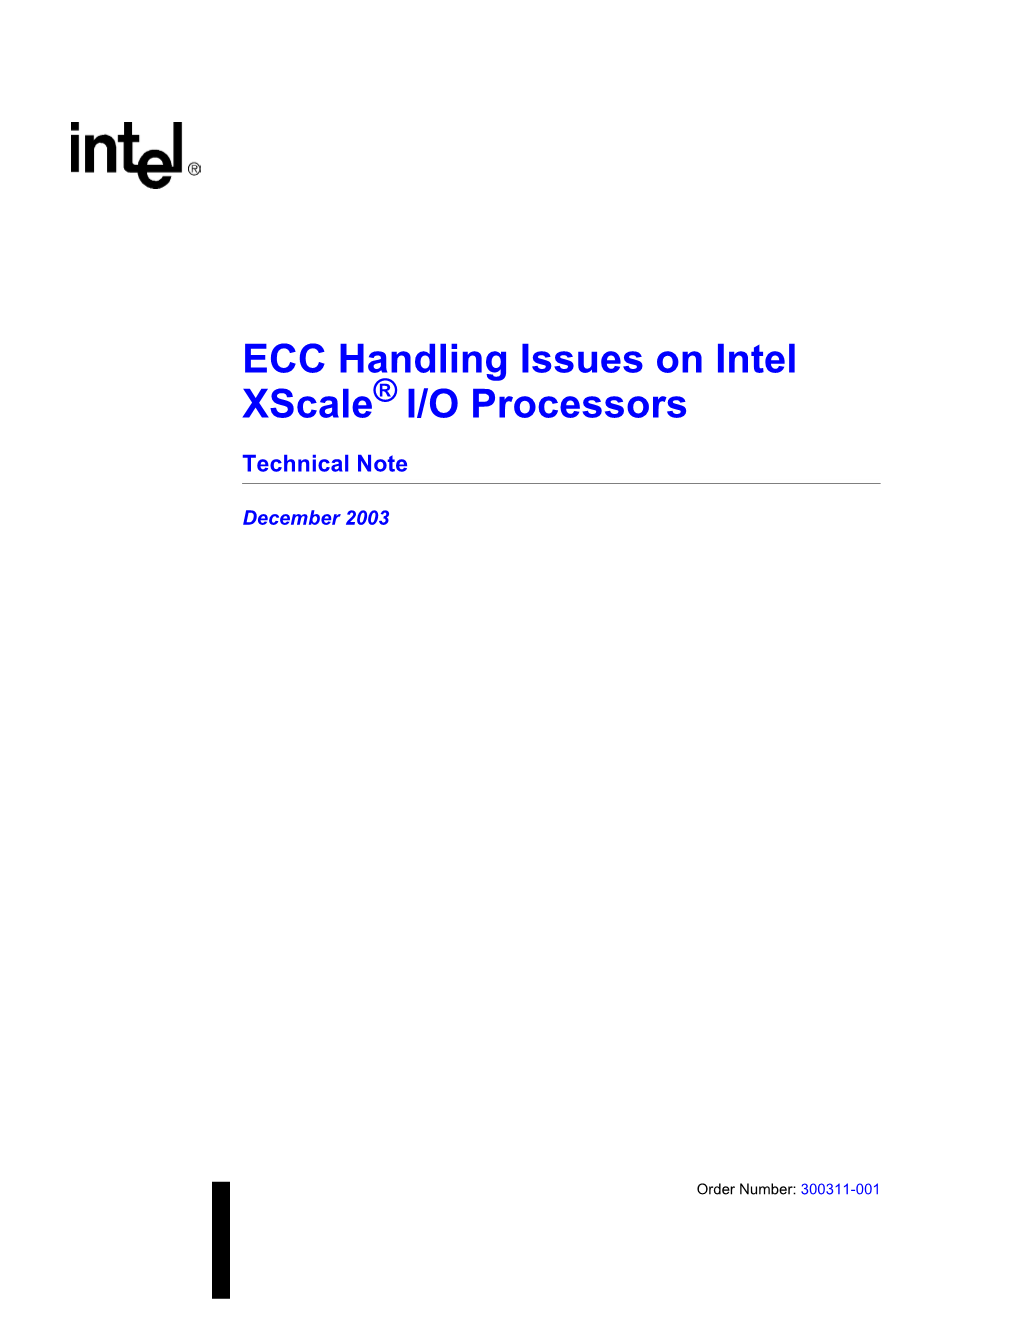 ECC Handling Issues on Intel Xscale® I/O Processors